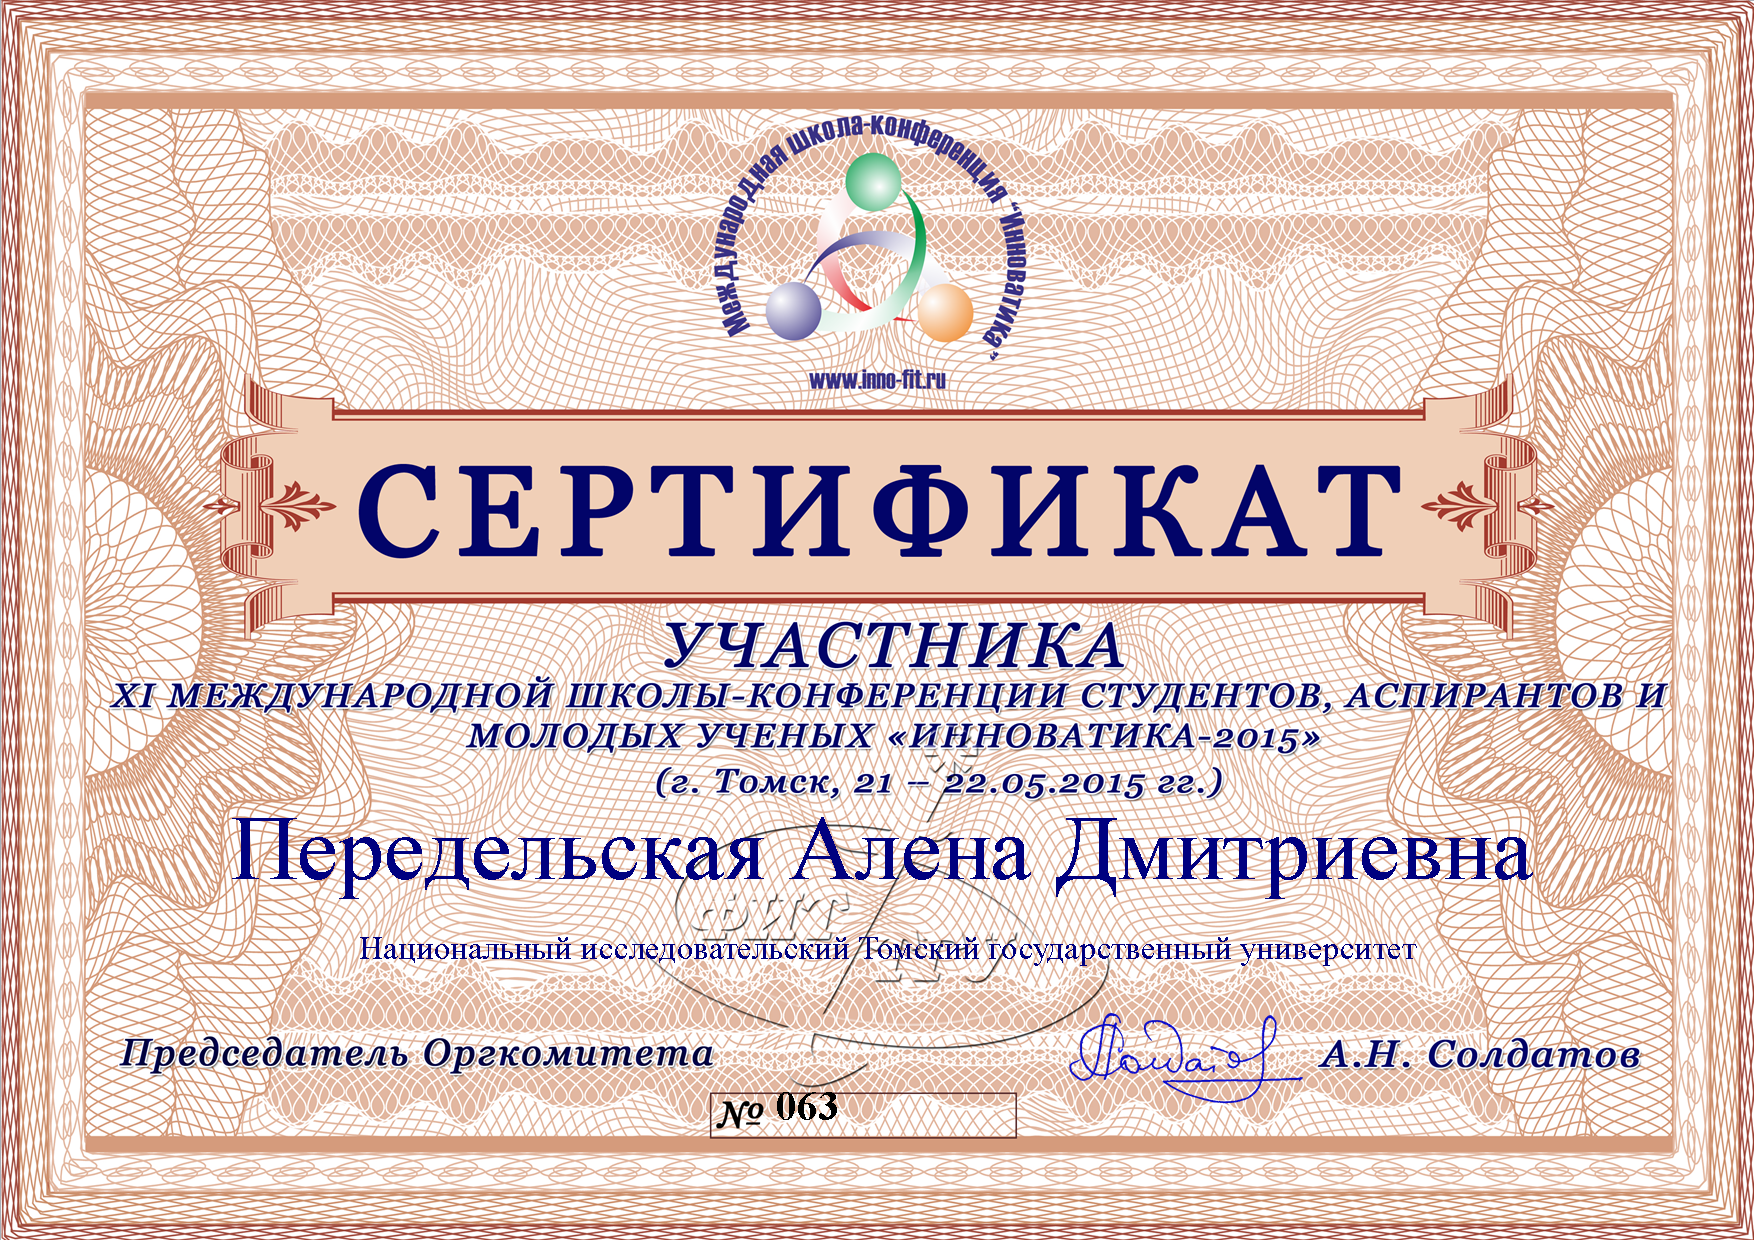 Сертификат Передельской Алены